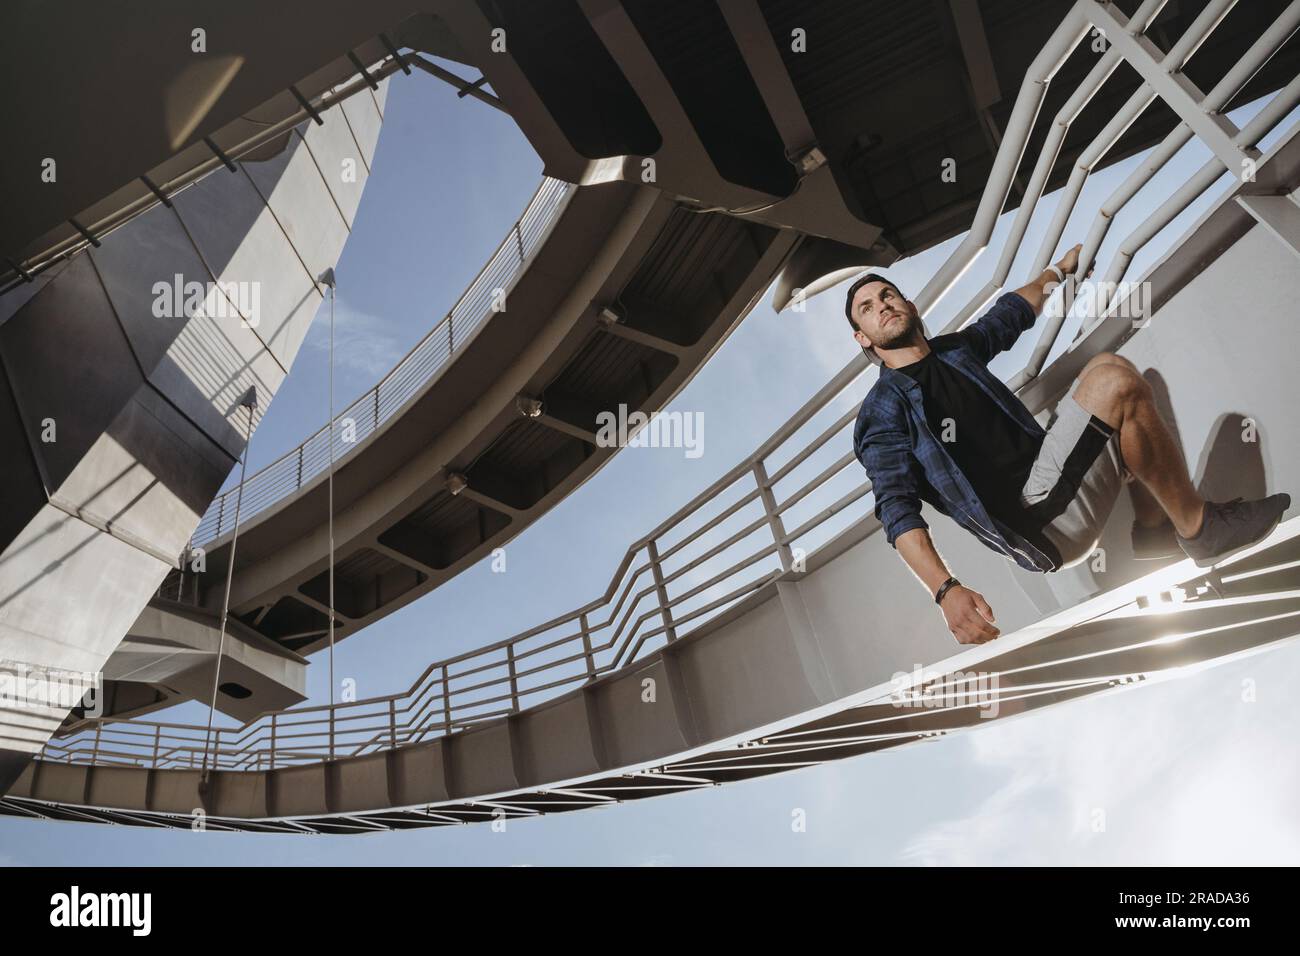 Ritratto dell'atleta parkour che sale sul ponte. Freerunning in città Foto Stock